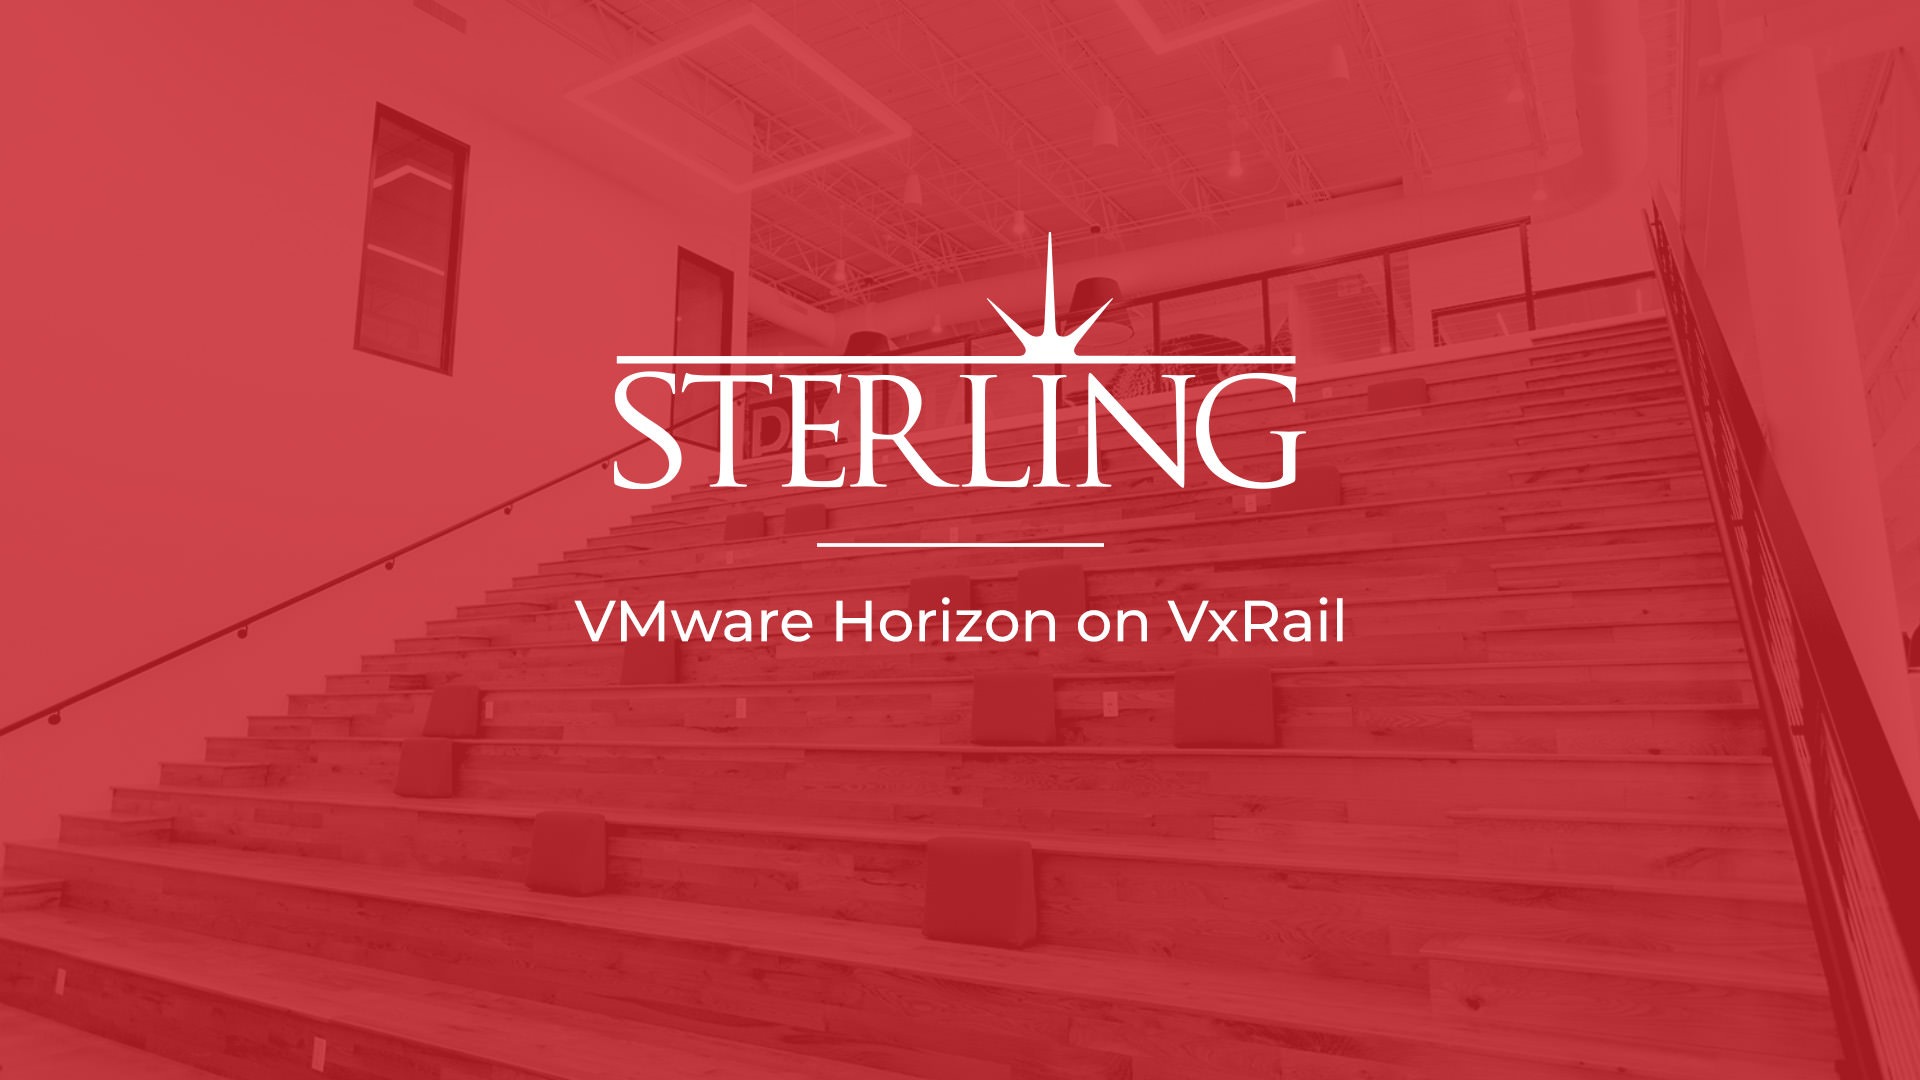 VMware Horizon on VxRail